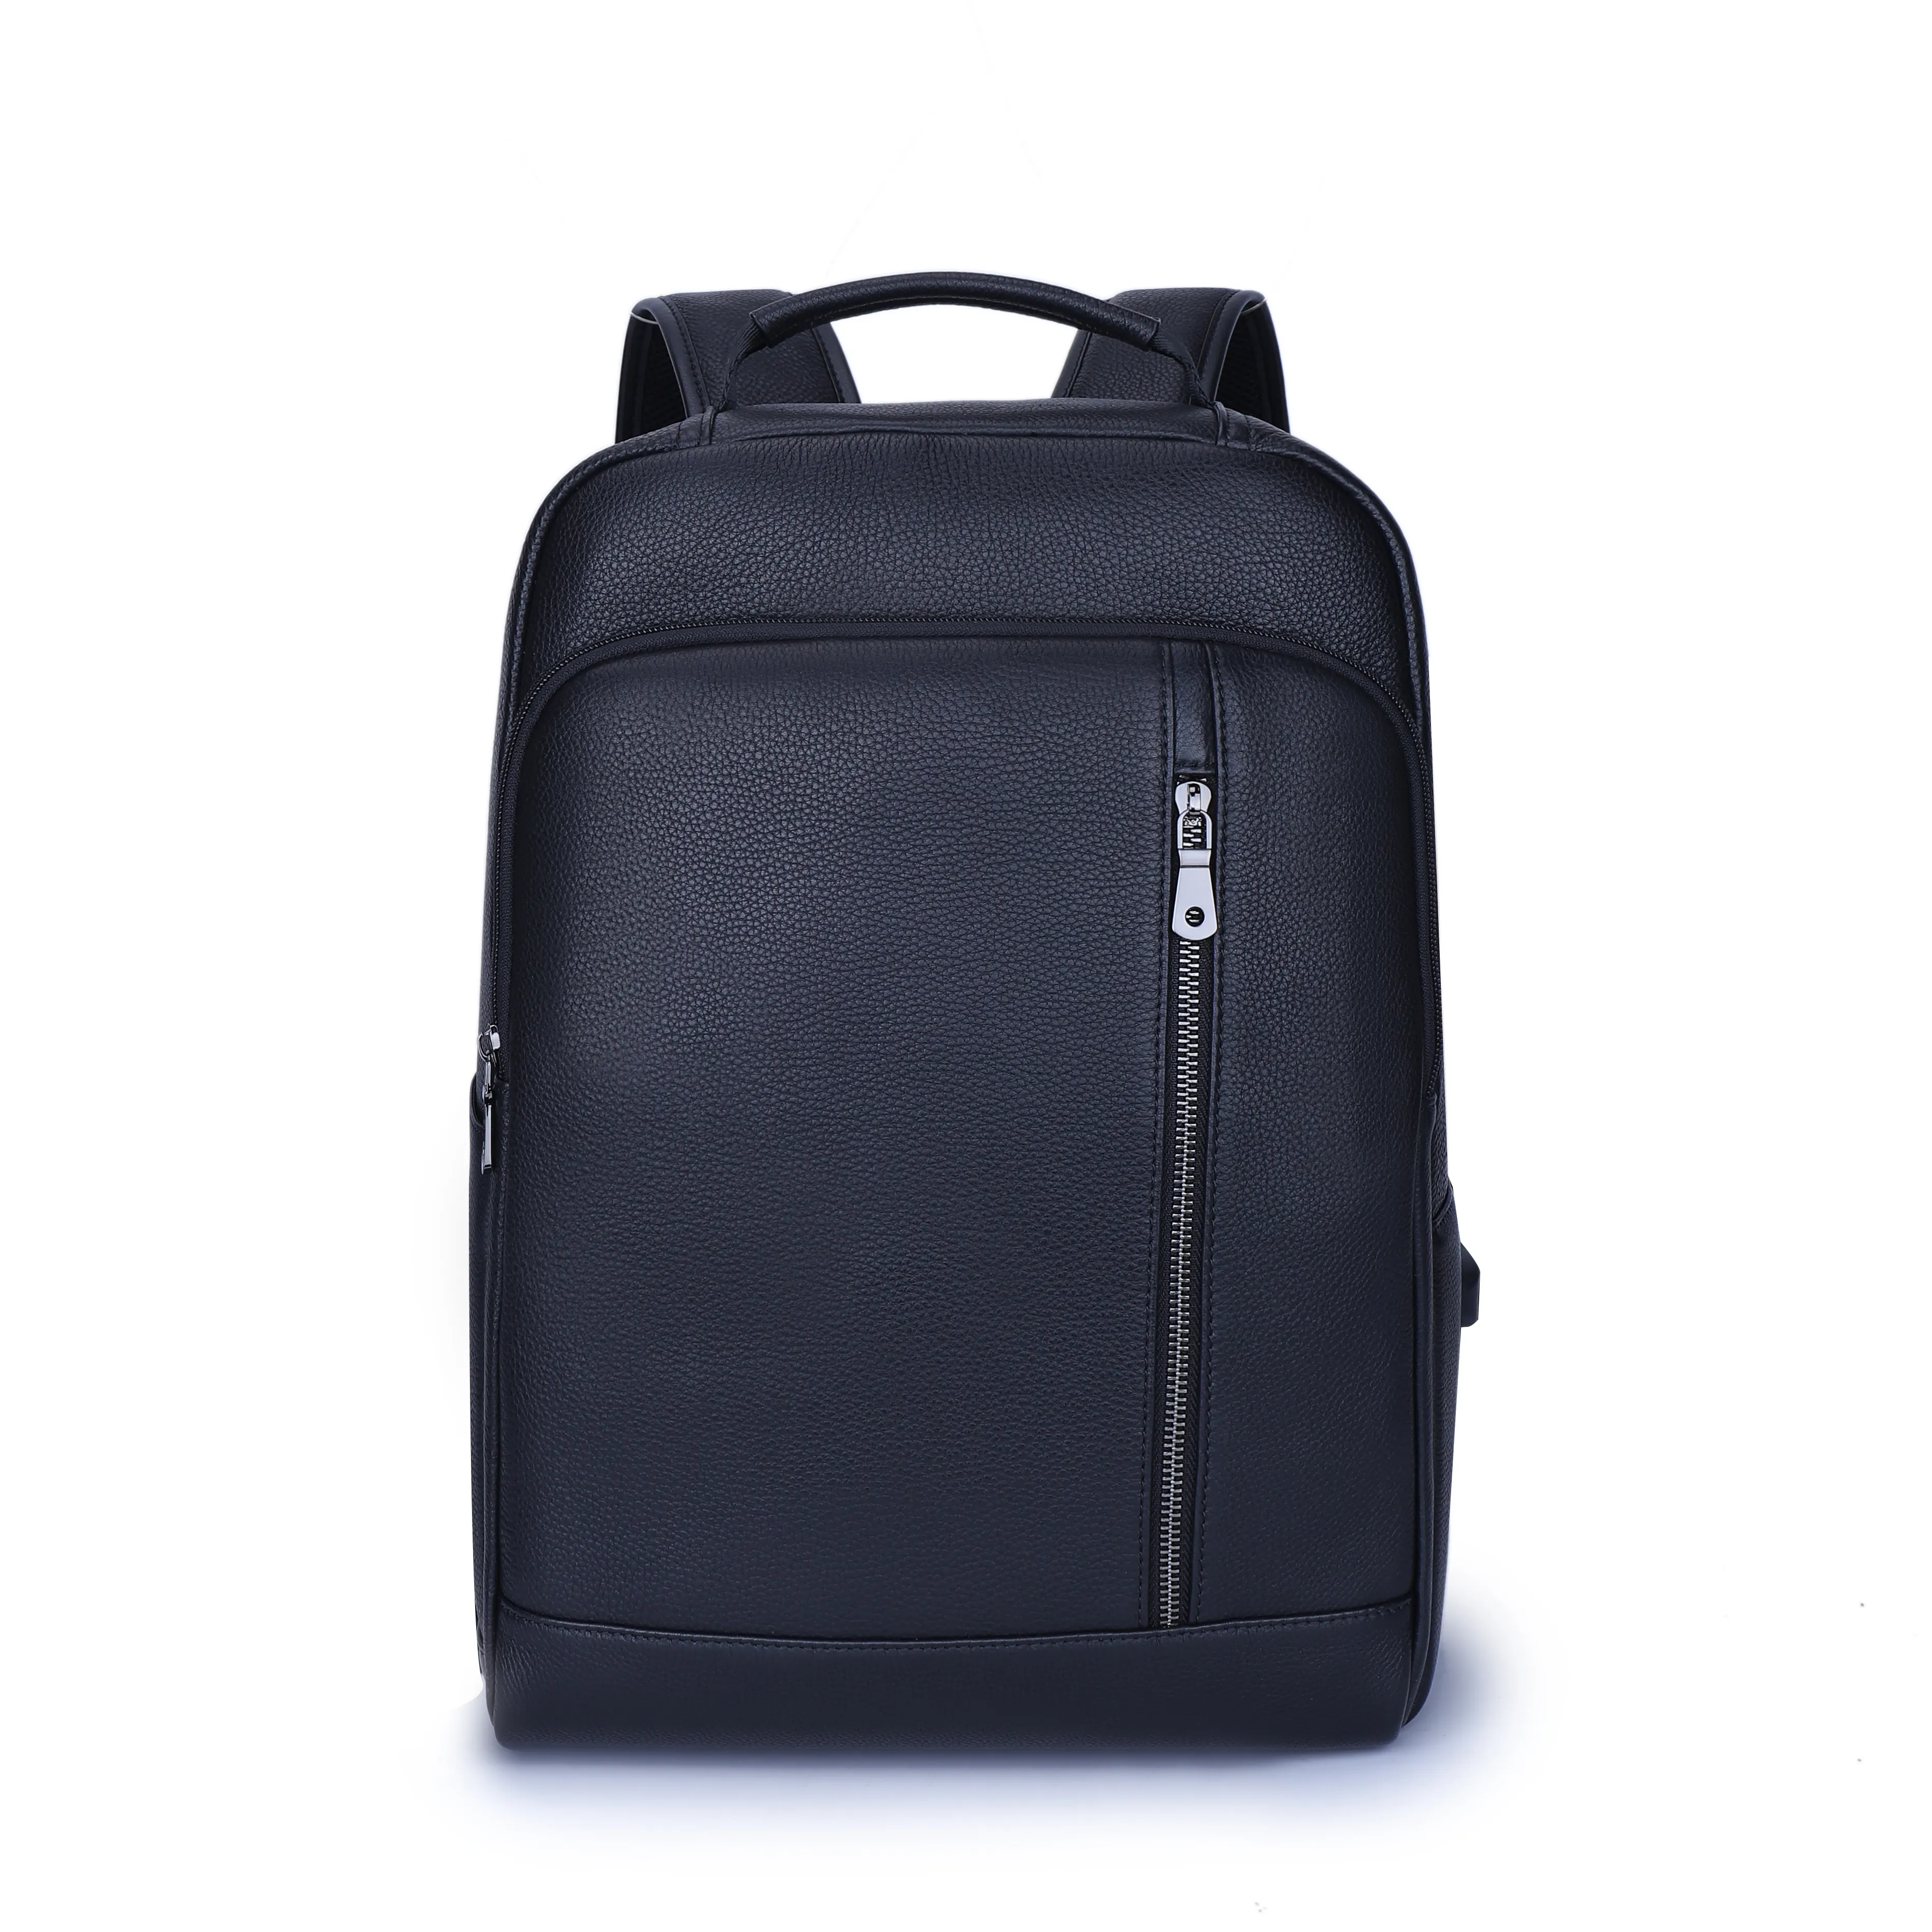 Venta al por mayor logotipo personalizado bolsas impermeables deportes casuales otros cuero mochila portátil mochilas bolsa de negocios para los hombres